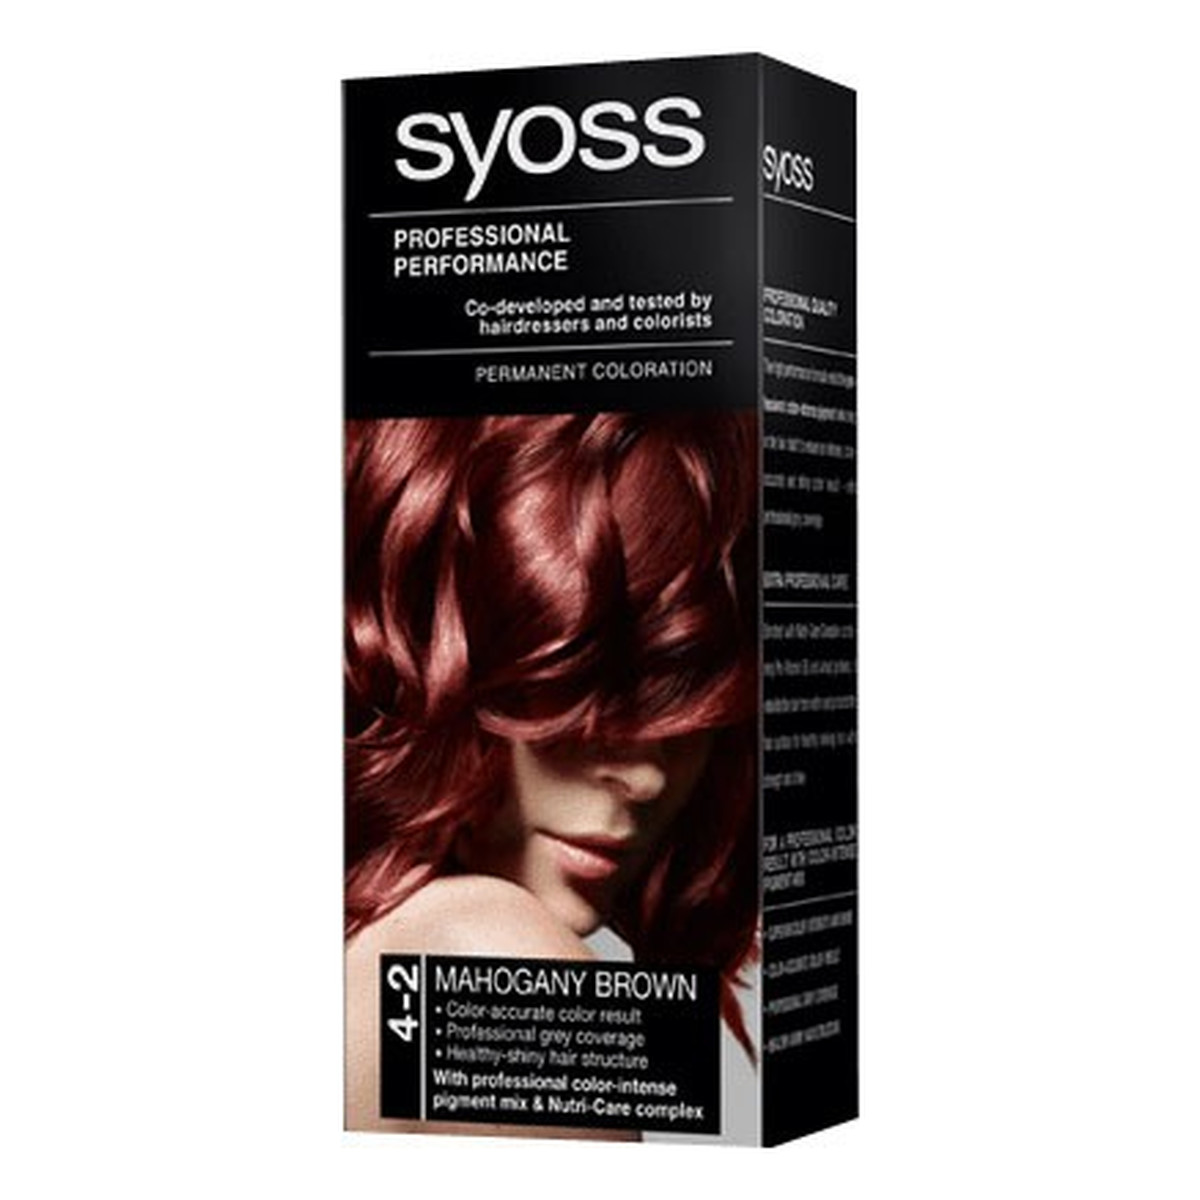 Syoss Professional Performance Farba Do Włosów Mahoniowy Brąz 4-2 210g